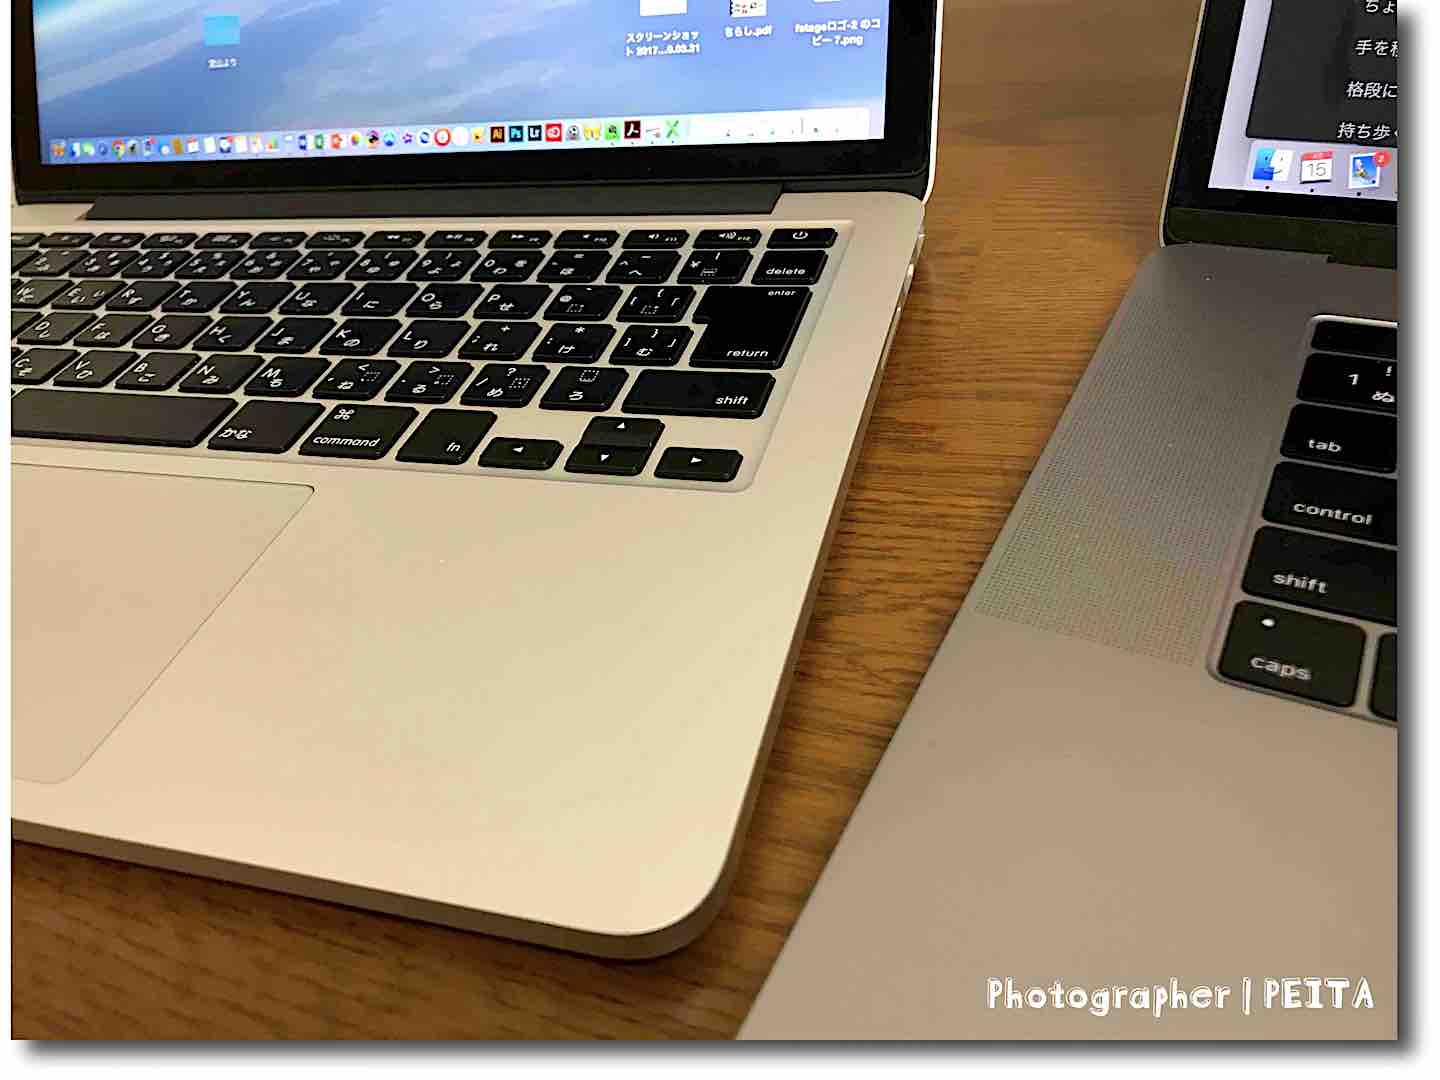 MacBook Pro 15インチ どこが変わった?進化した?5つのポイント! 音質や 